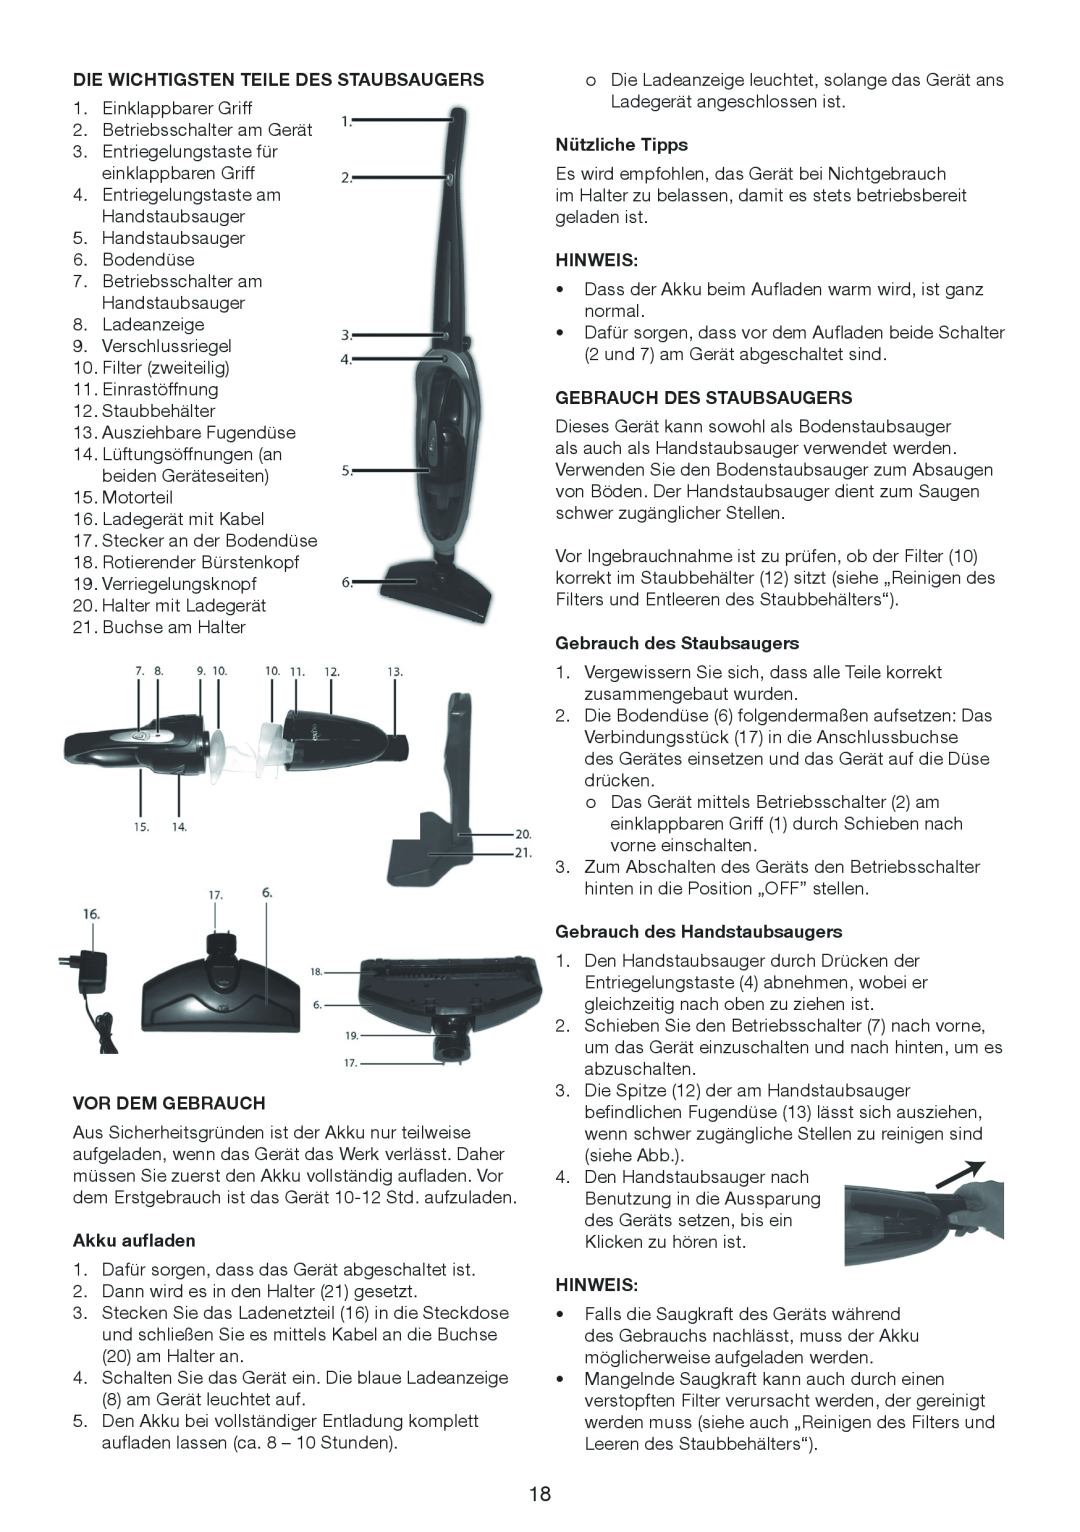 Melissa 640-075 manual Die Wichtigsten Teile Des Staubsaugers, Vor Dem Gebrauch, Akku aufladen, Nützliche Tipps, Hinweis 